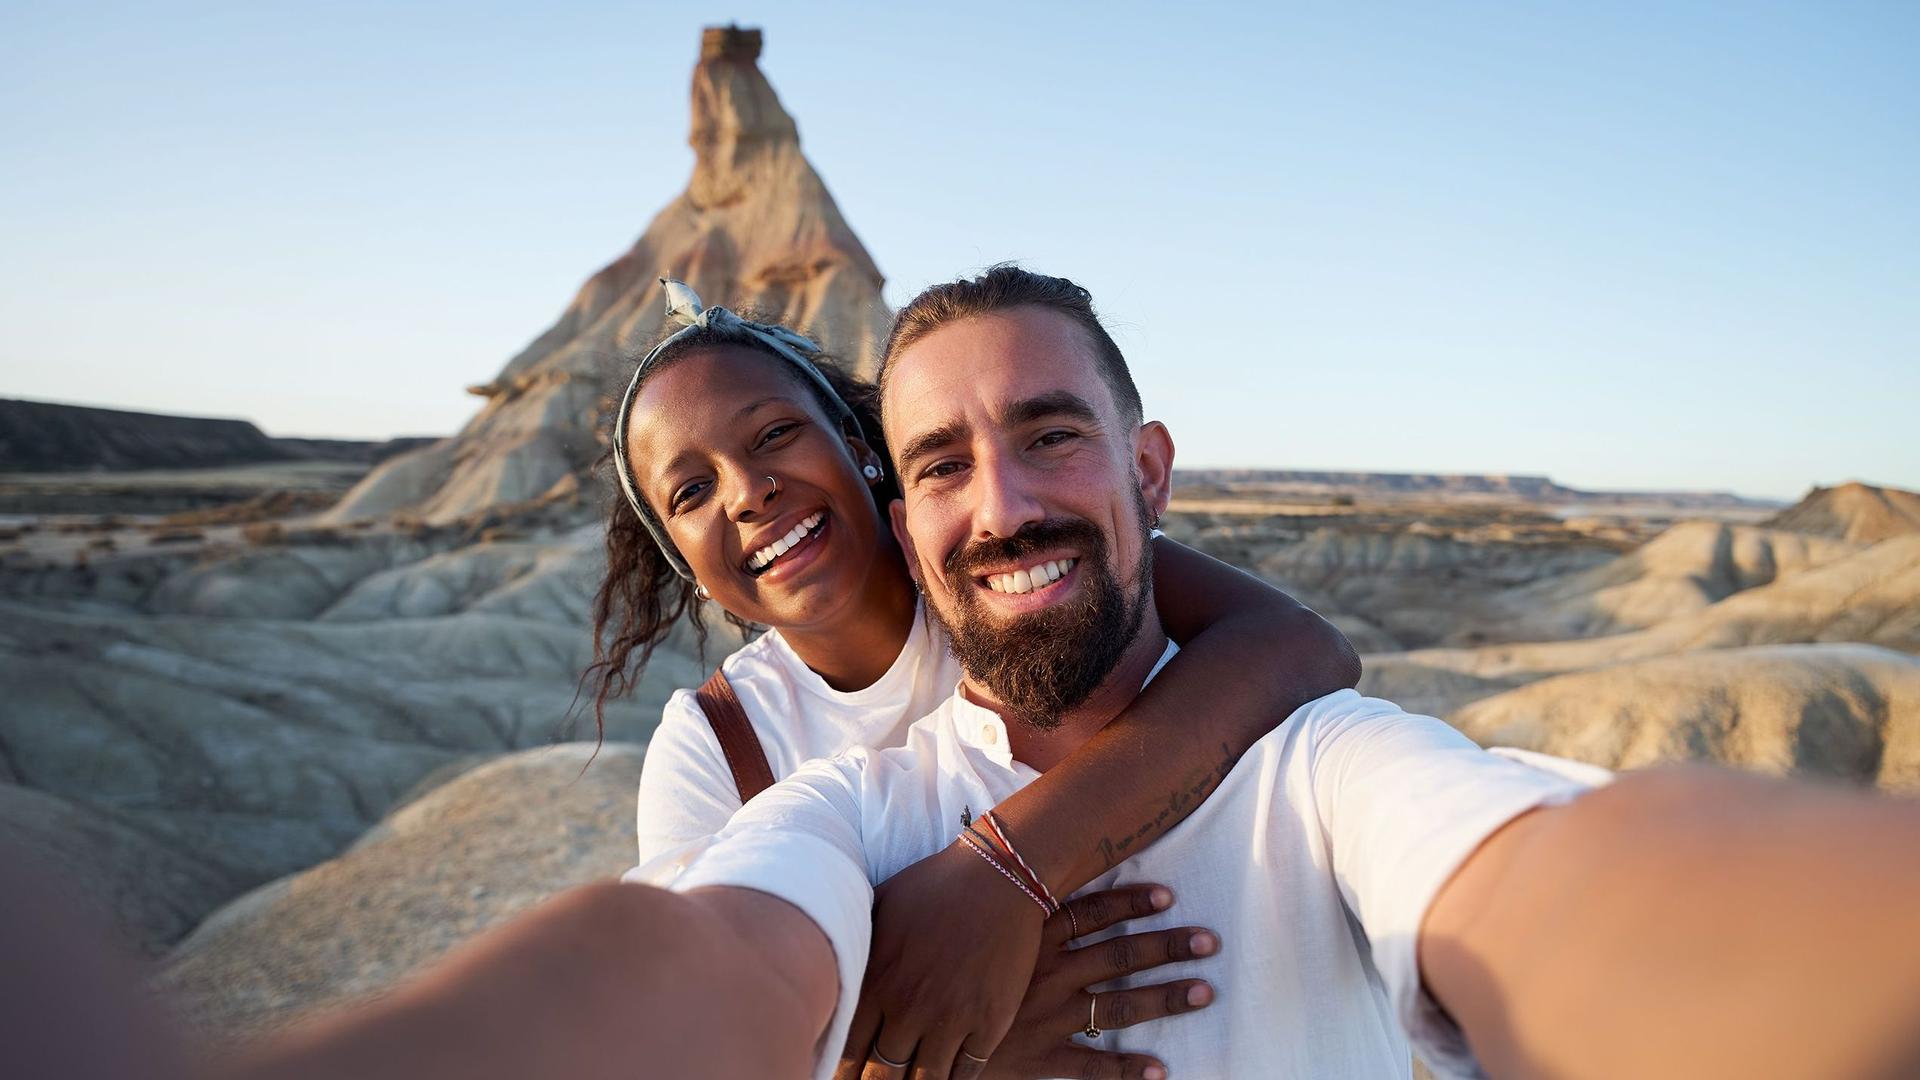 Fröhliches Selfie eines Paares in einer steinigen Wüstenlandschaft mit einem Felsberg im Hintergrund.